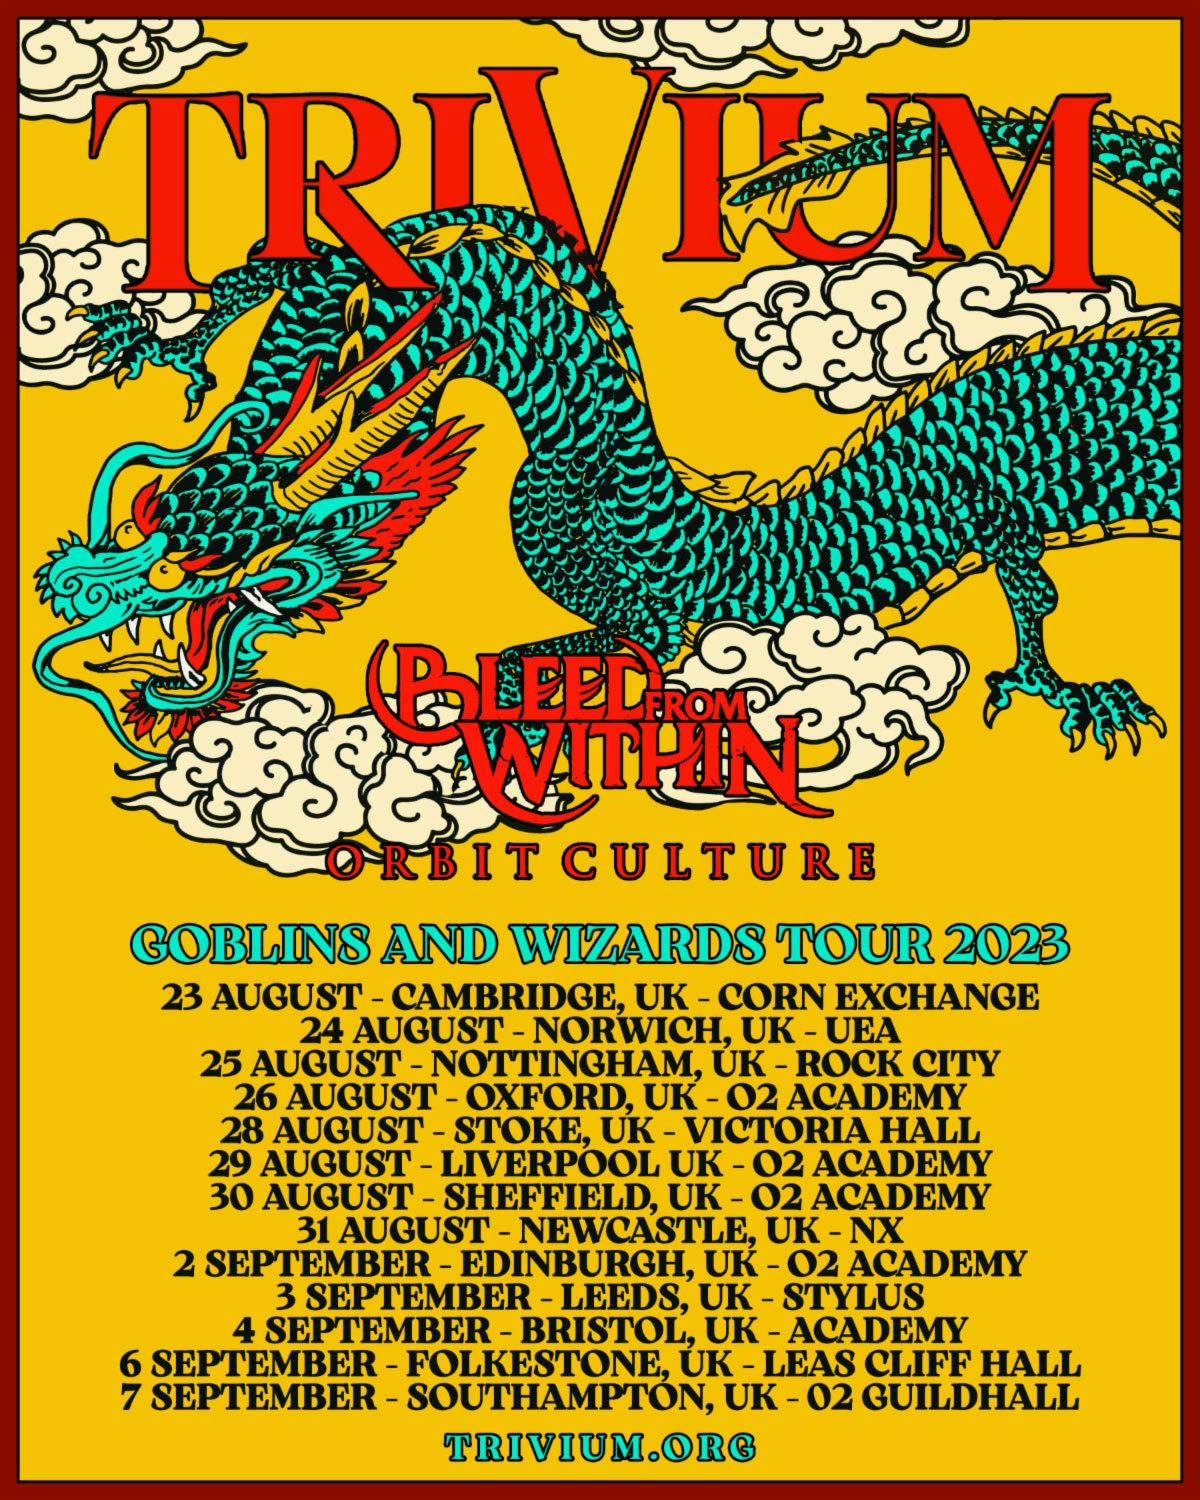 trivium tour dates 2023